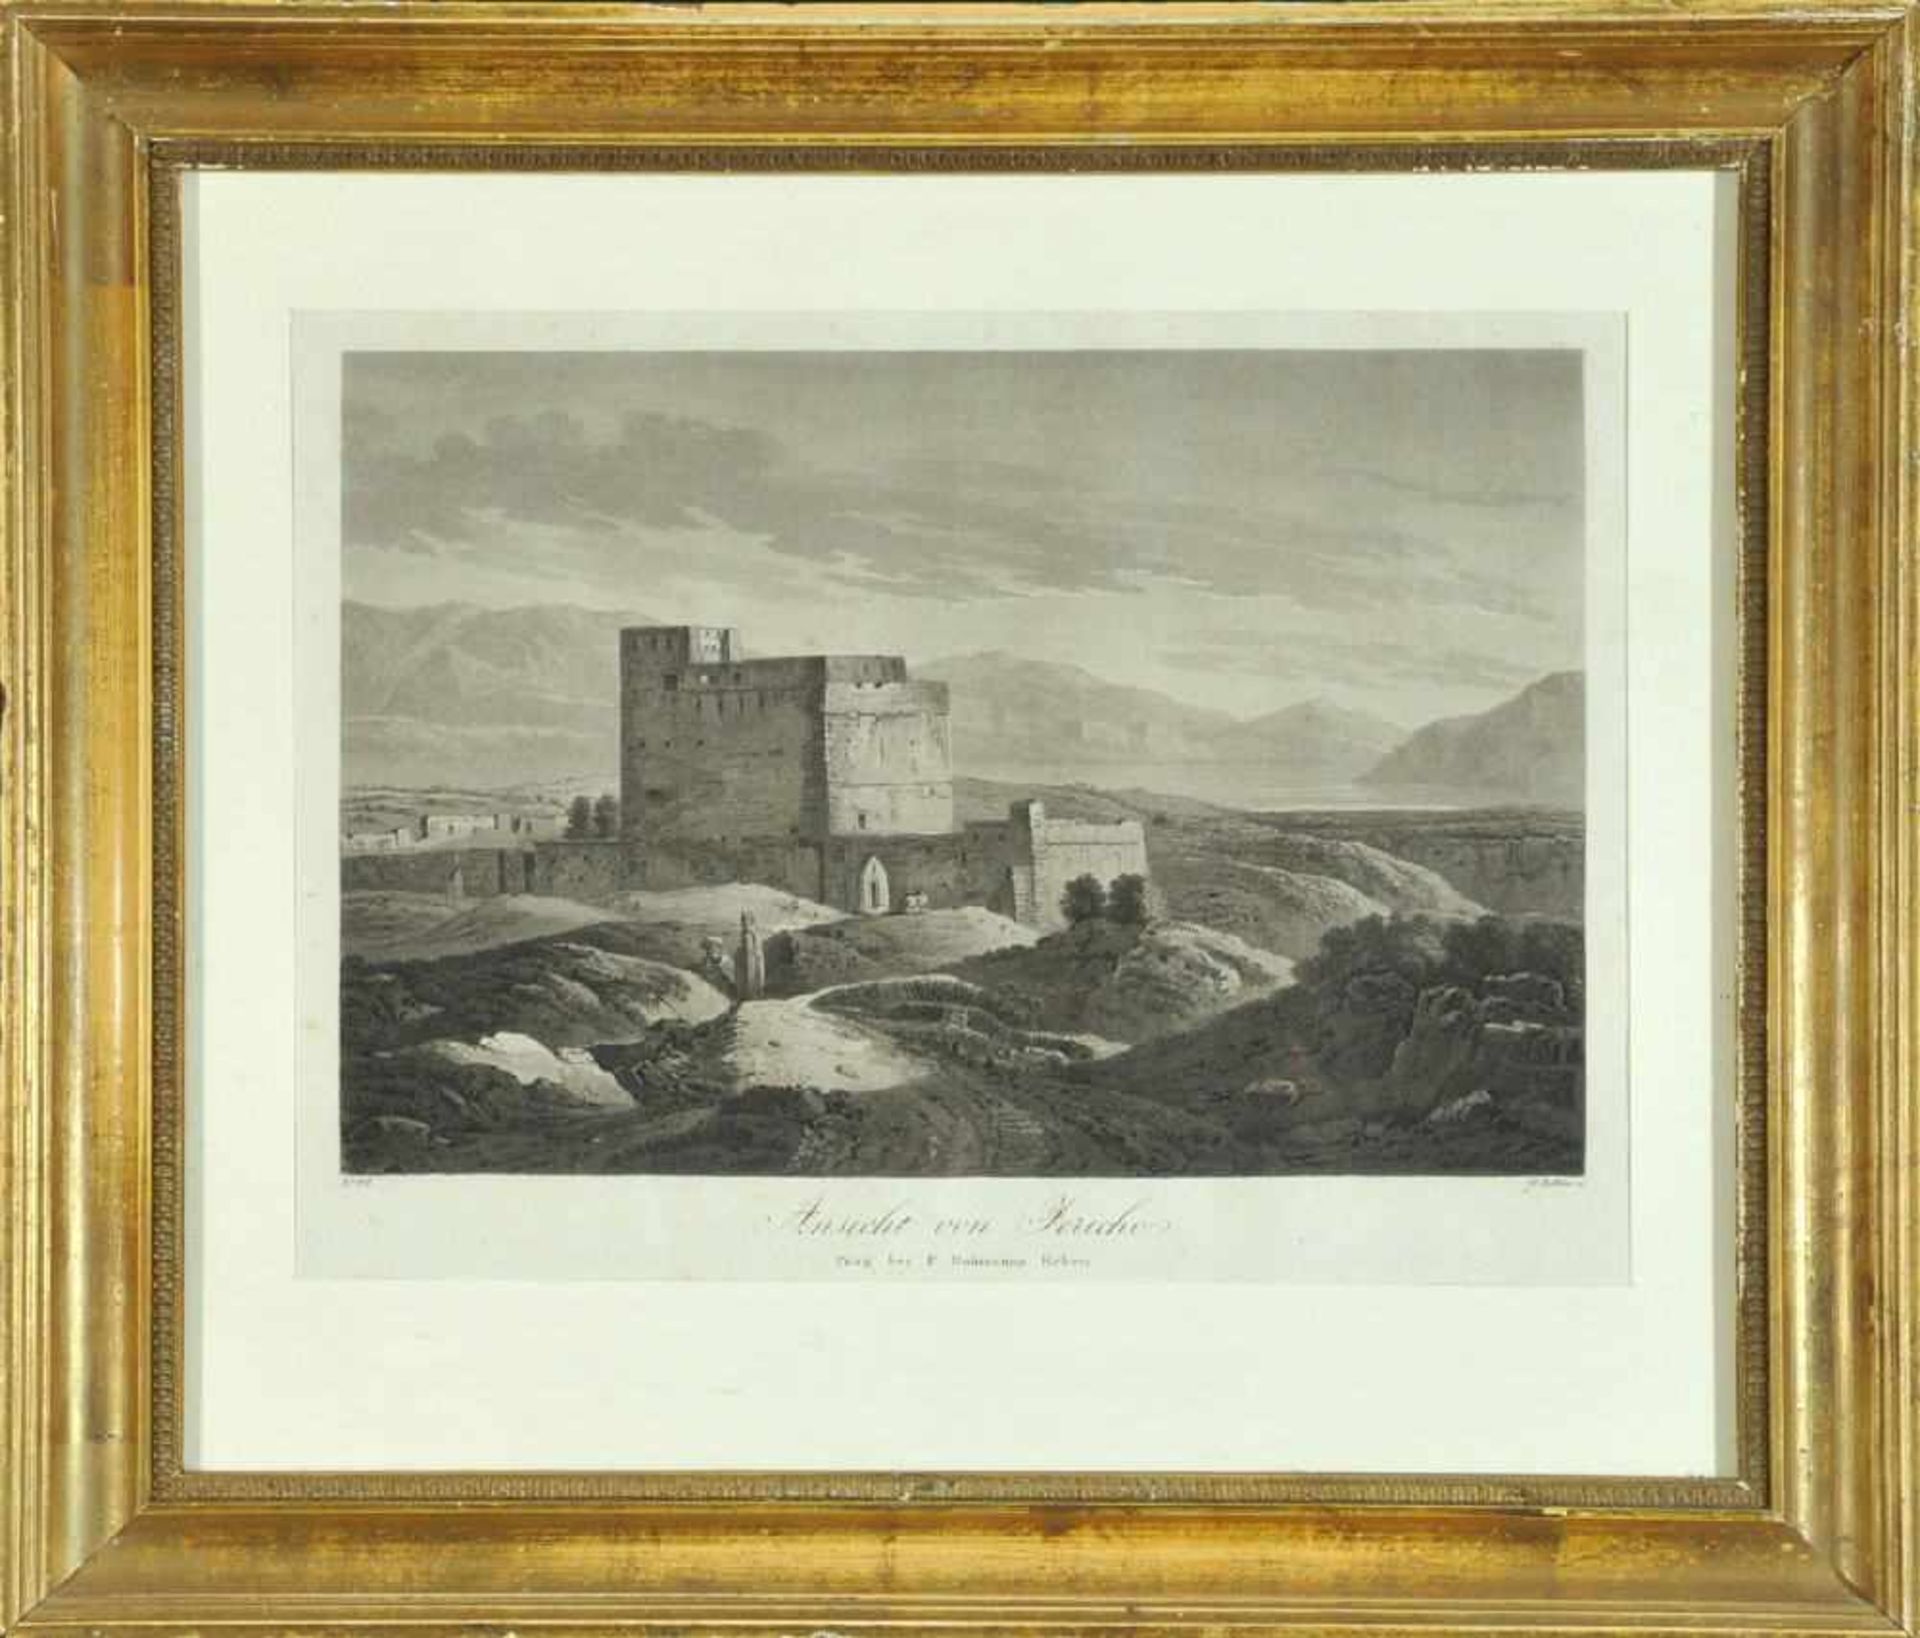 Jericho, Ansicht der RuinenstadtAquatintaradierung, 20,5 x 29 cm, von G. Döbler, i.d.Pl. bez., 19.